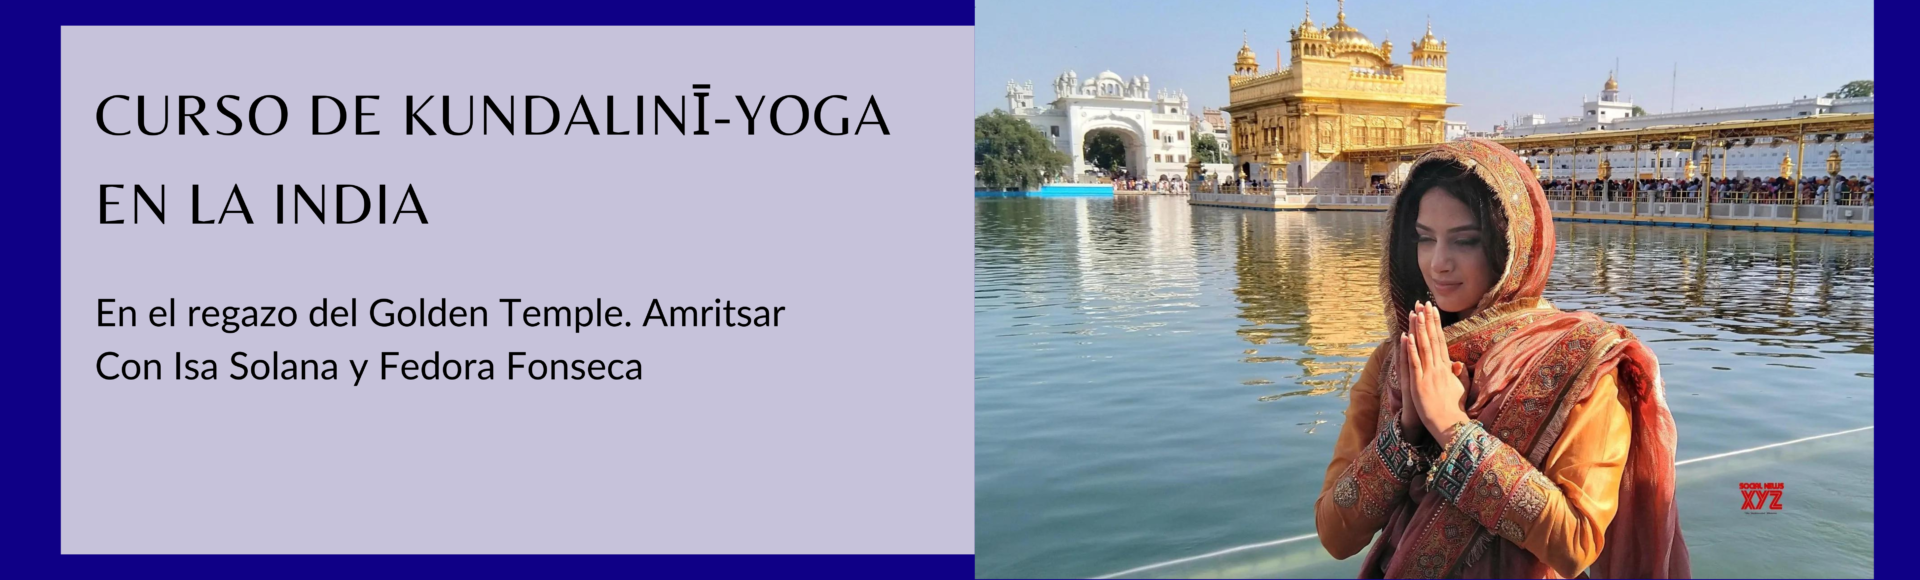 Curso de Kundalini yoga en la India